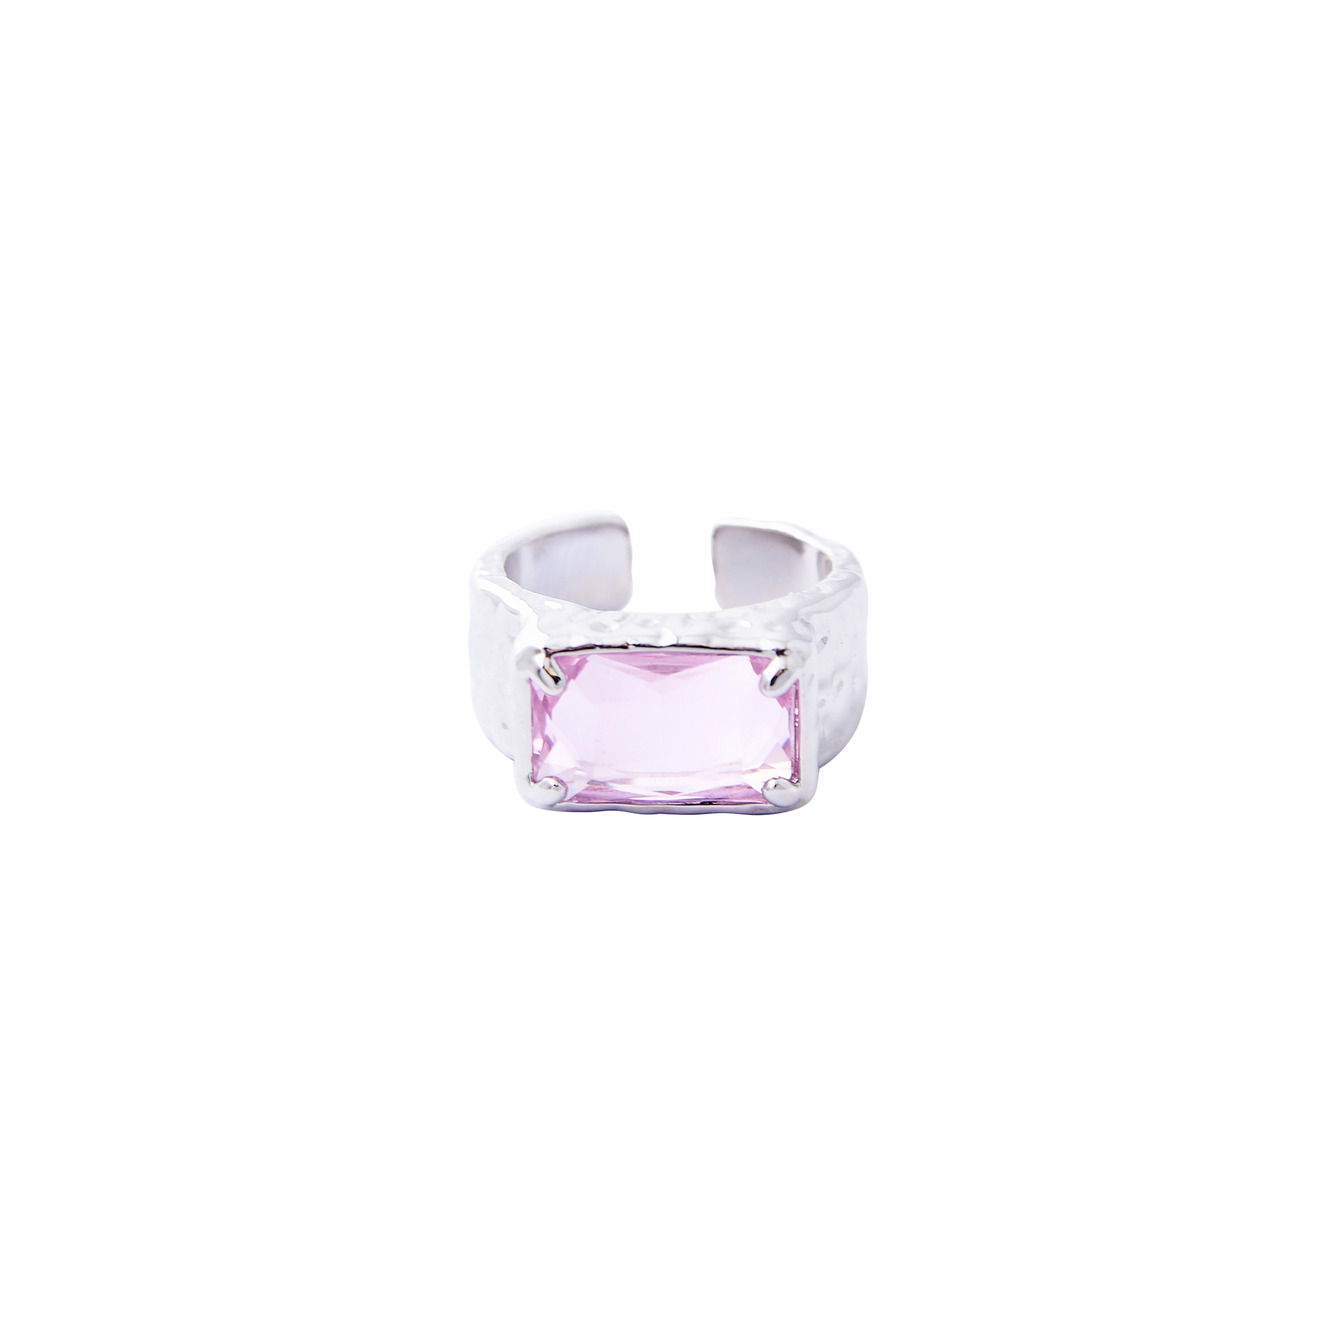 Herald Percy Серебристое кольцо с крупным розовым кристаллом herald percy серебристое колье с розовым сердцем